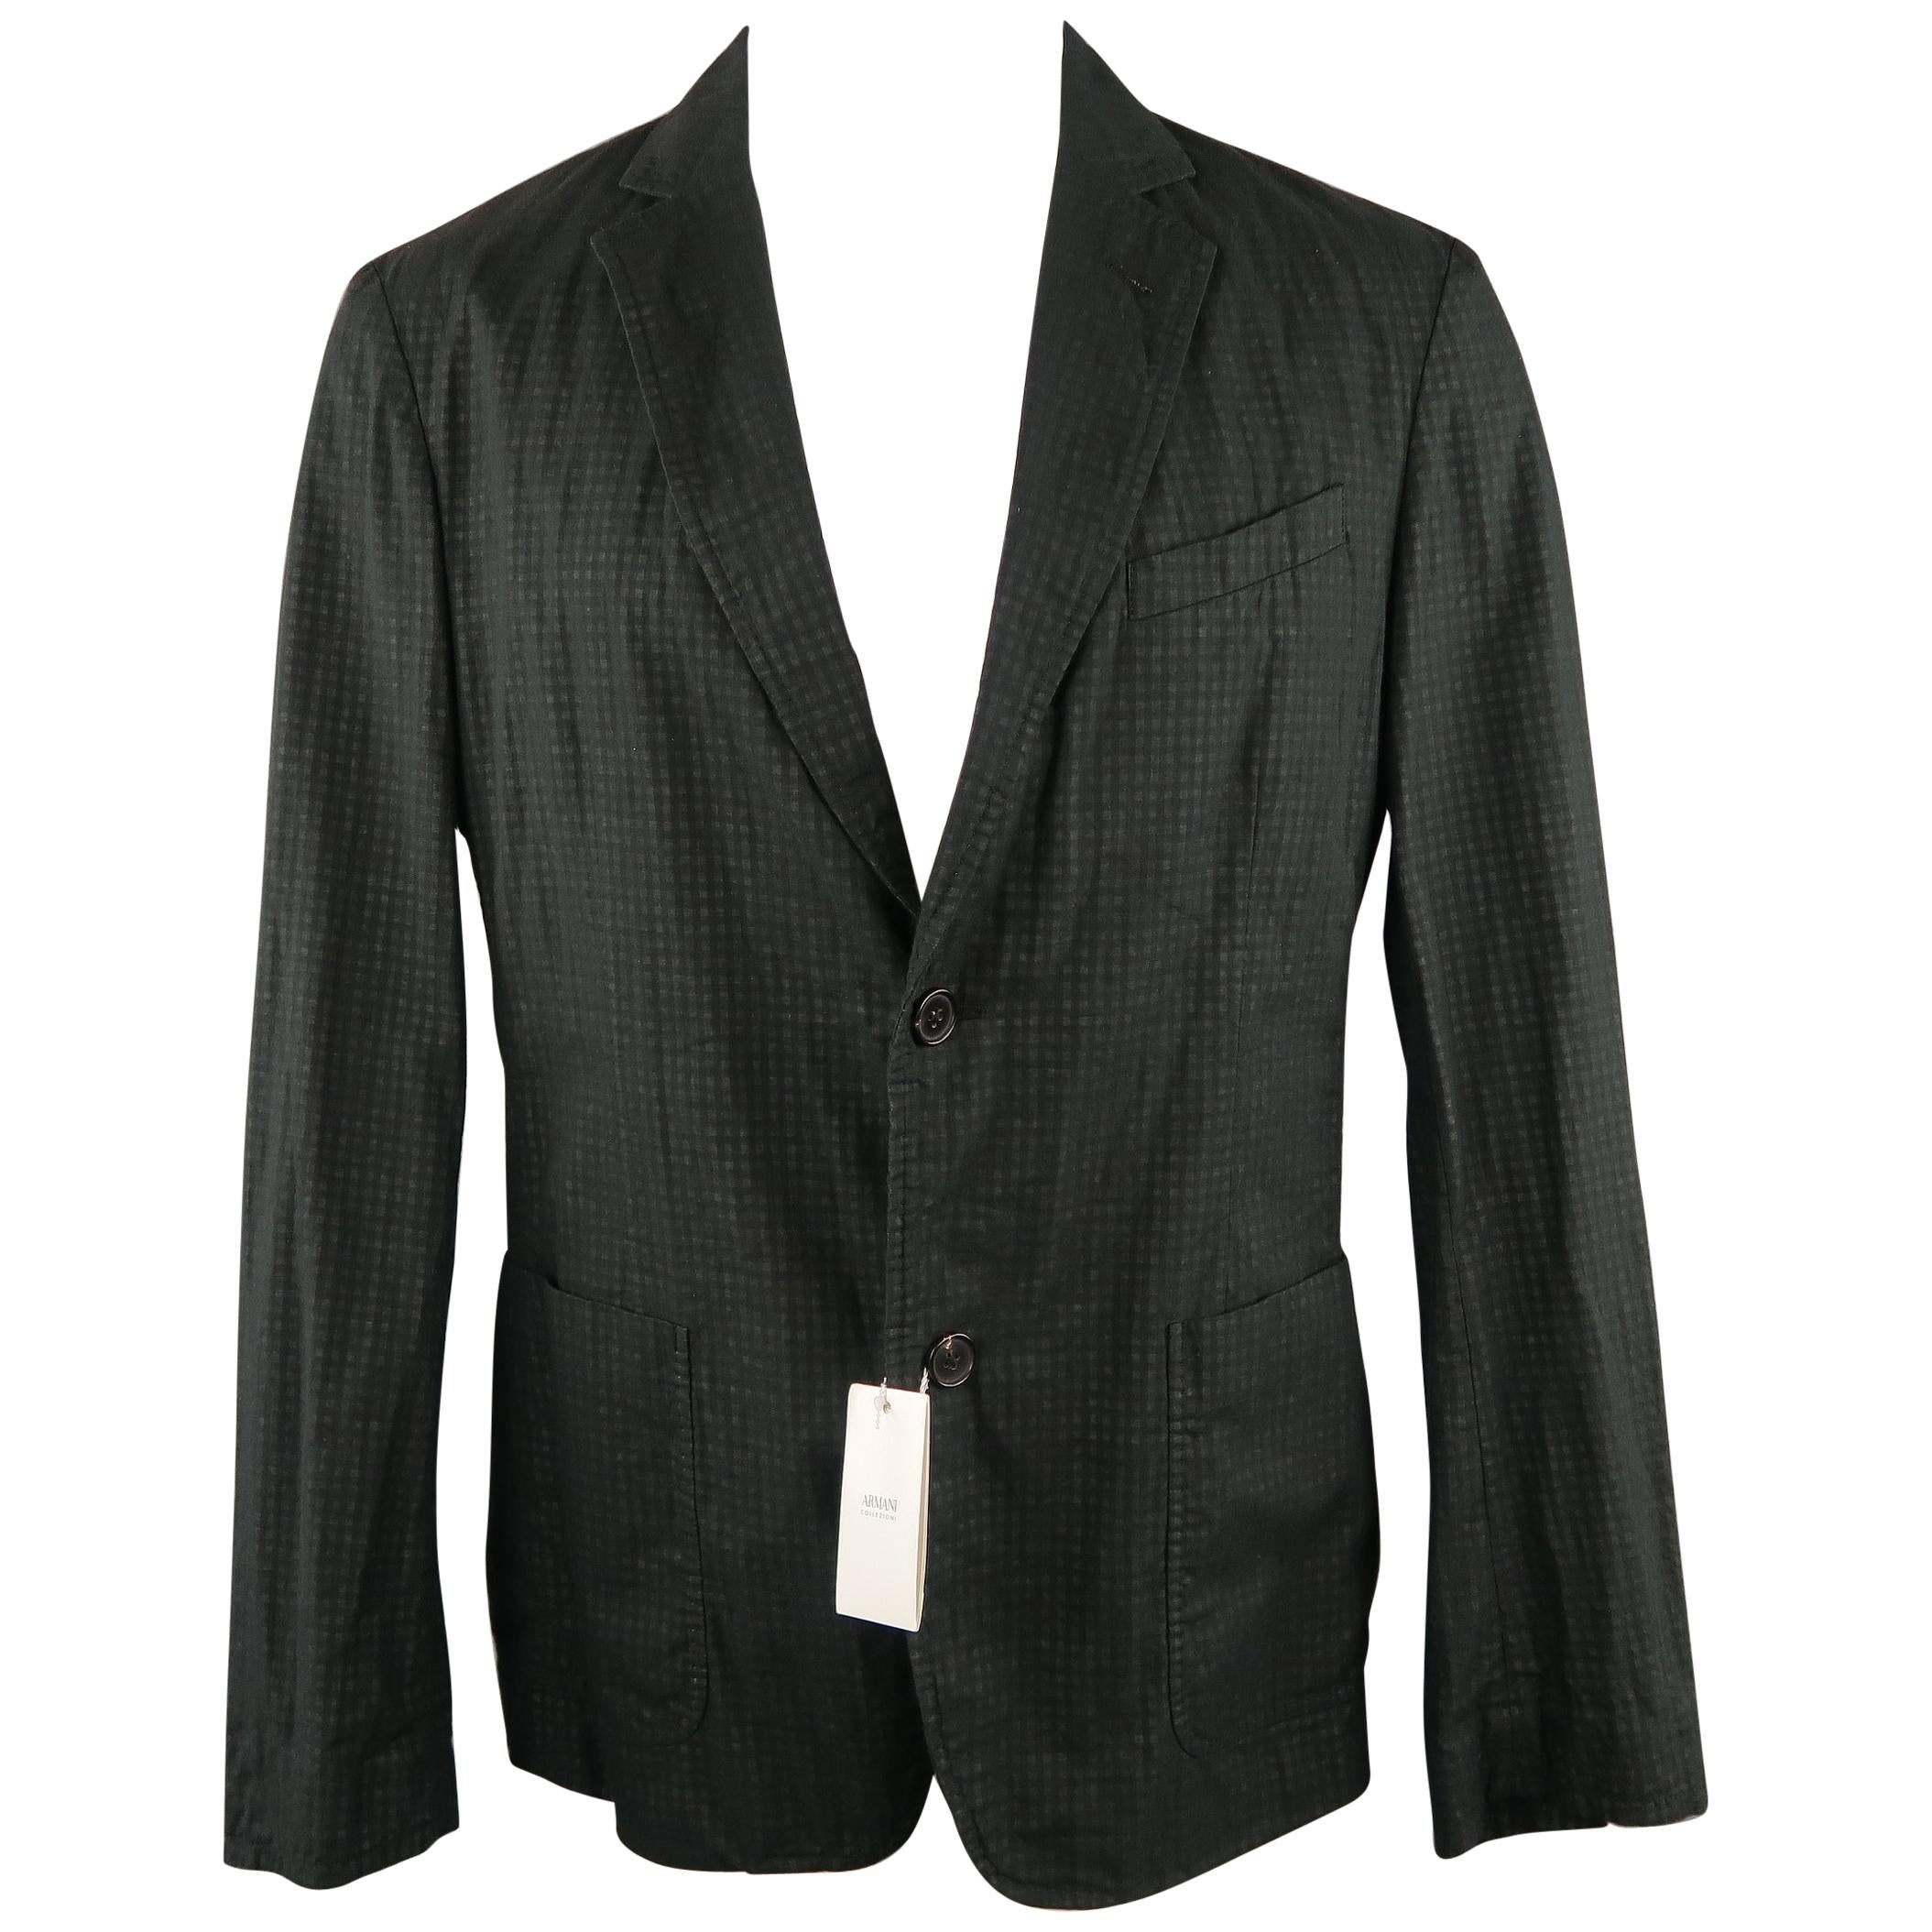 ARMANI COLLEZIONI 34 Regular Black & Grey Checkered Cotton Sport Coat